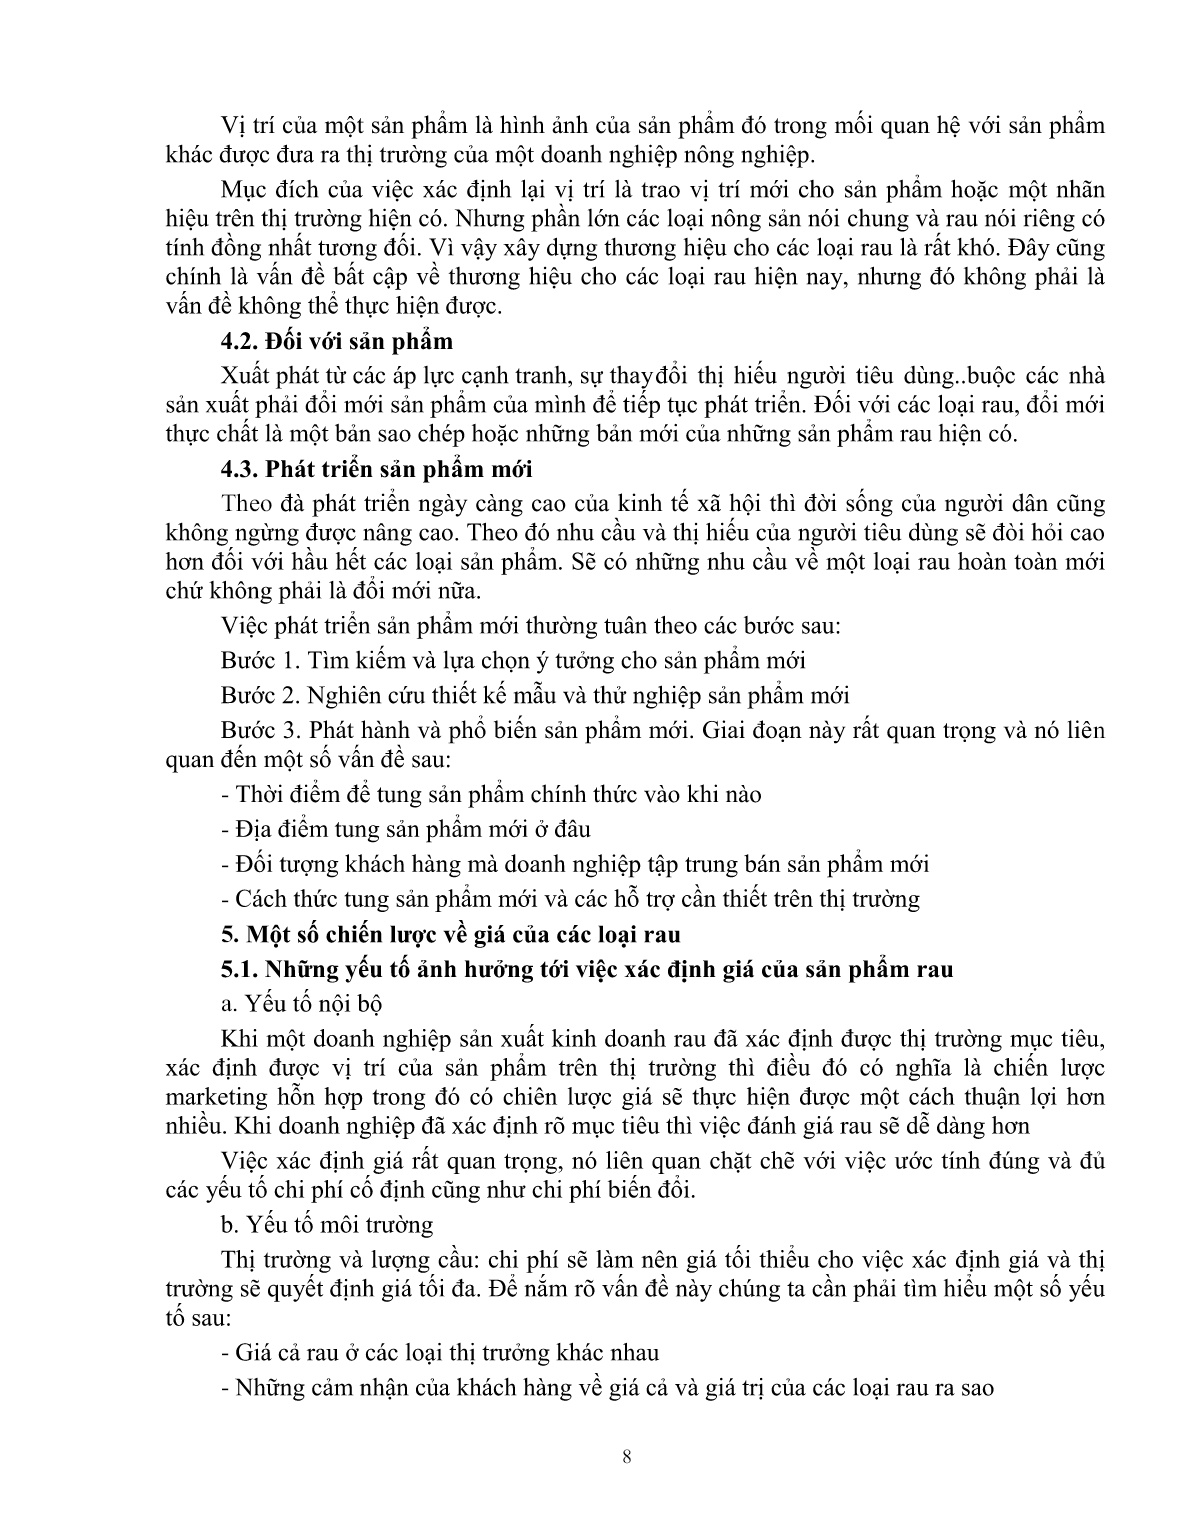 Giáo trình mô đun Tiêu thụ sản phẩn rau an toàn (Trình độ: Đào tạo dưới 03 tháng) trang 9